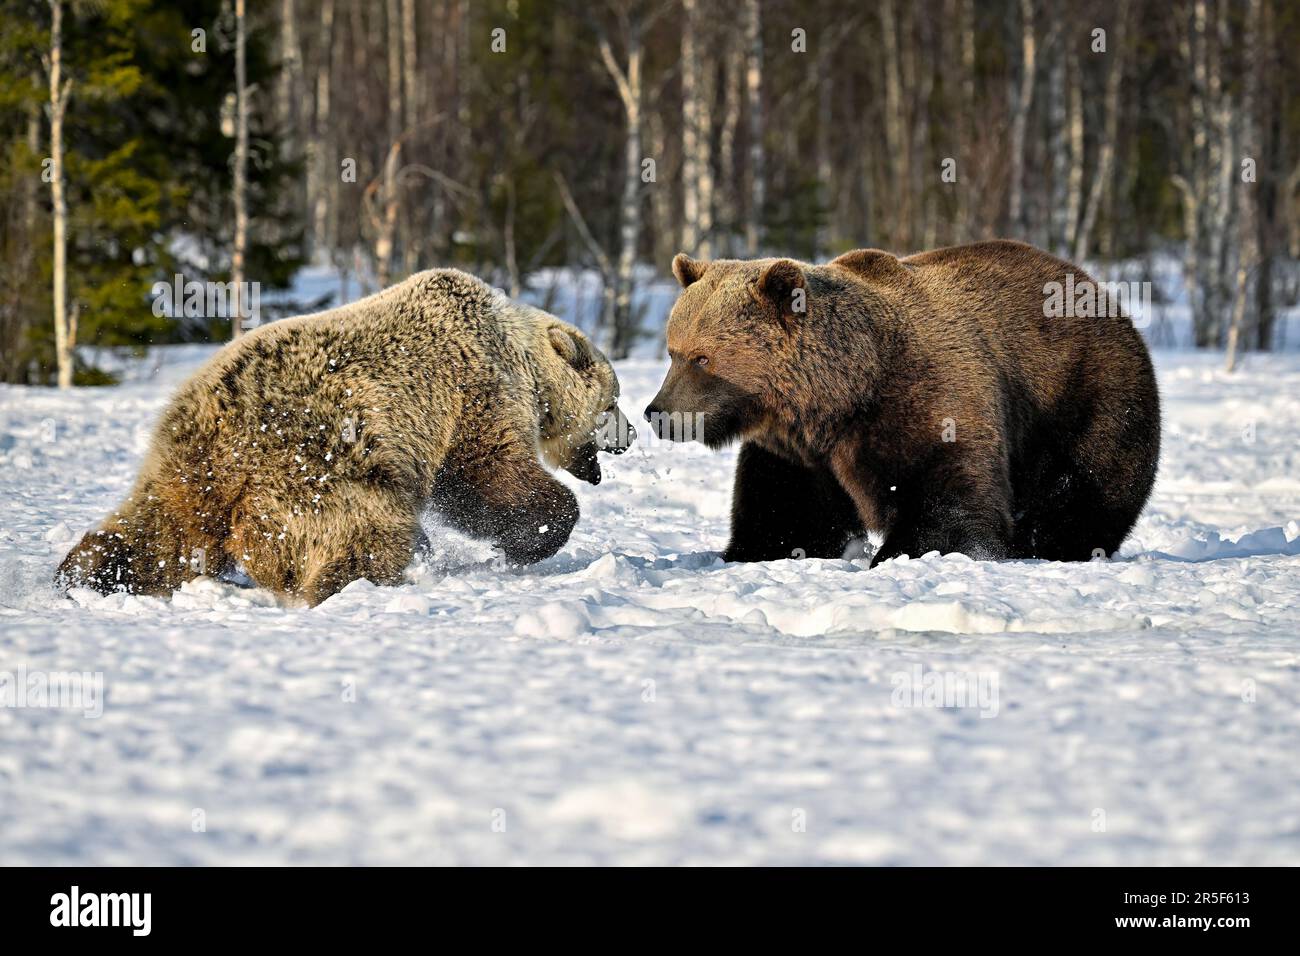 bärenmutter verteidigt seine Jungen vor einem männlichen Bären Stockfoto